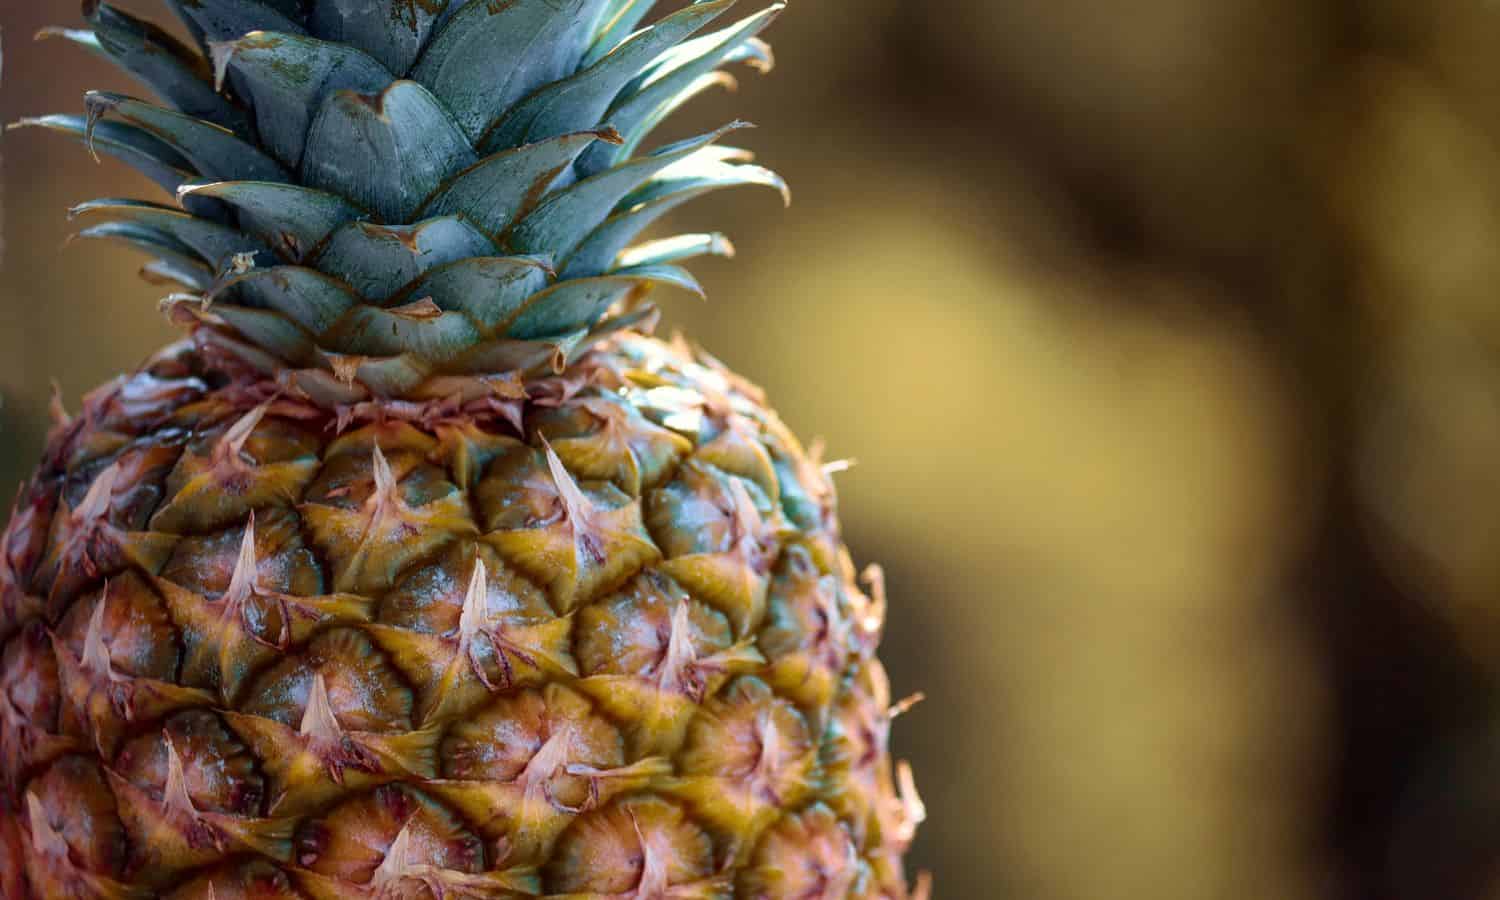 how to grow pineapple